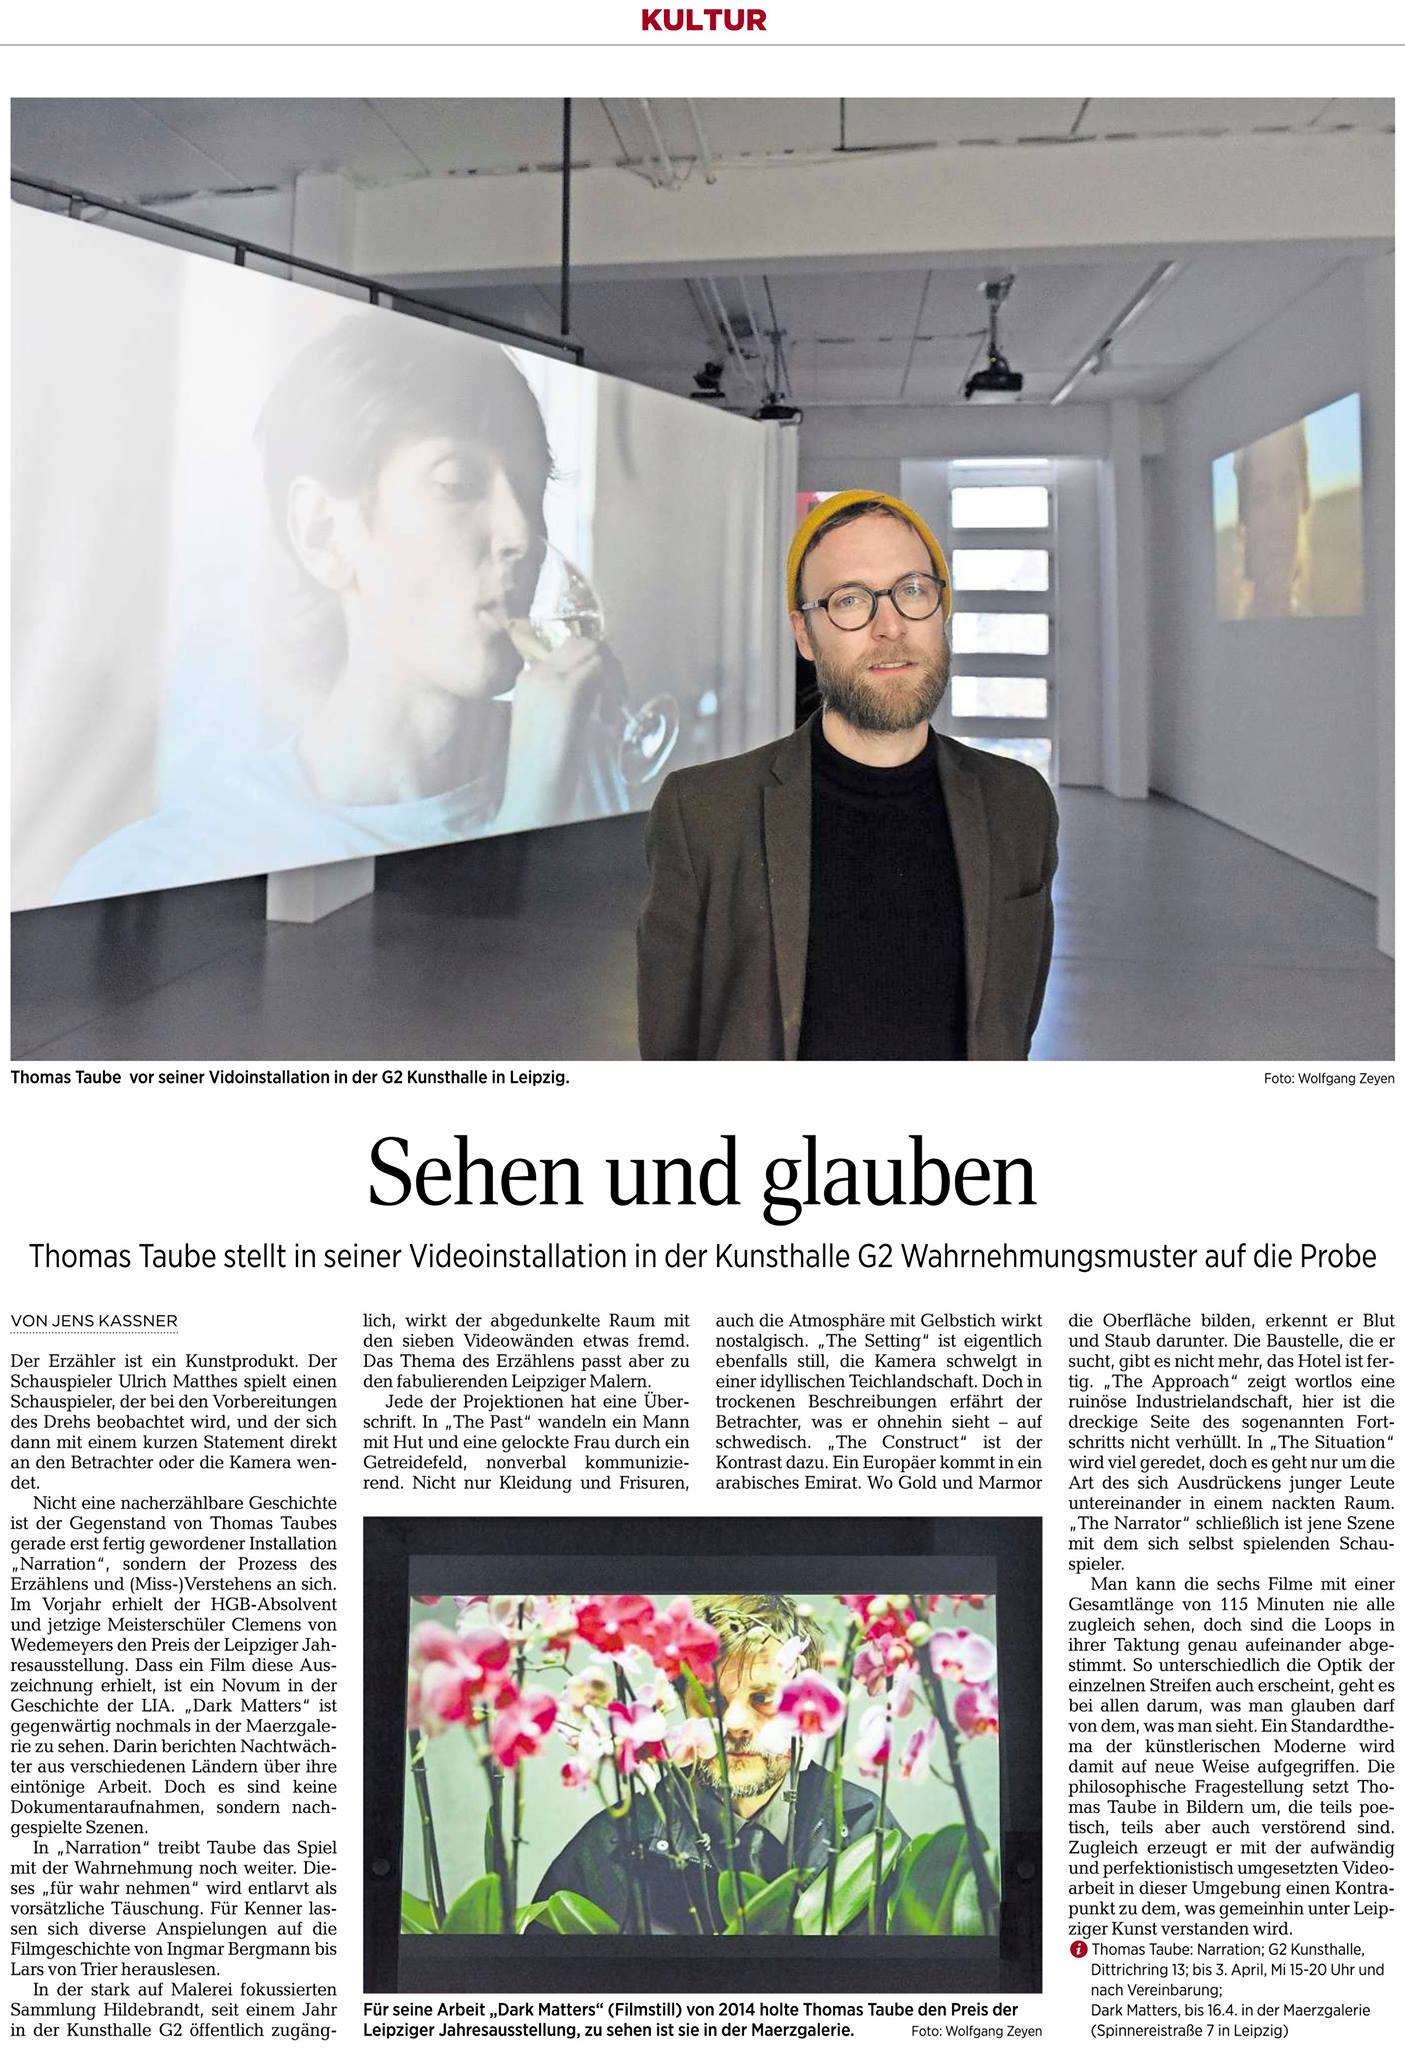 Gregor Hildebrandt – LUFT IN ALLEN ZIMMERN - Exhibition at G2 Kunsthalle in  Leipzig